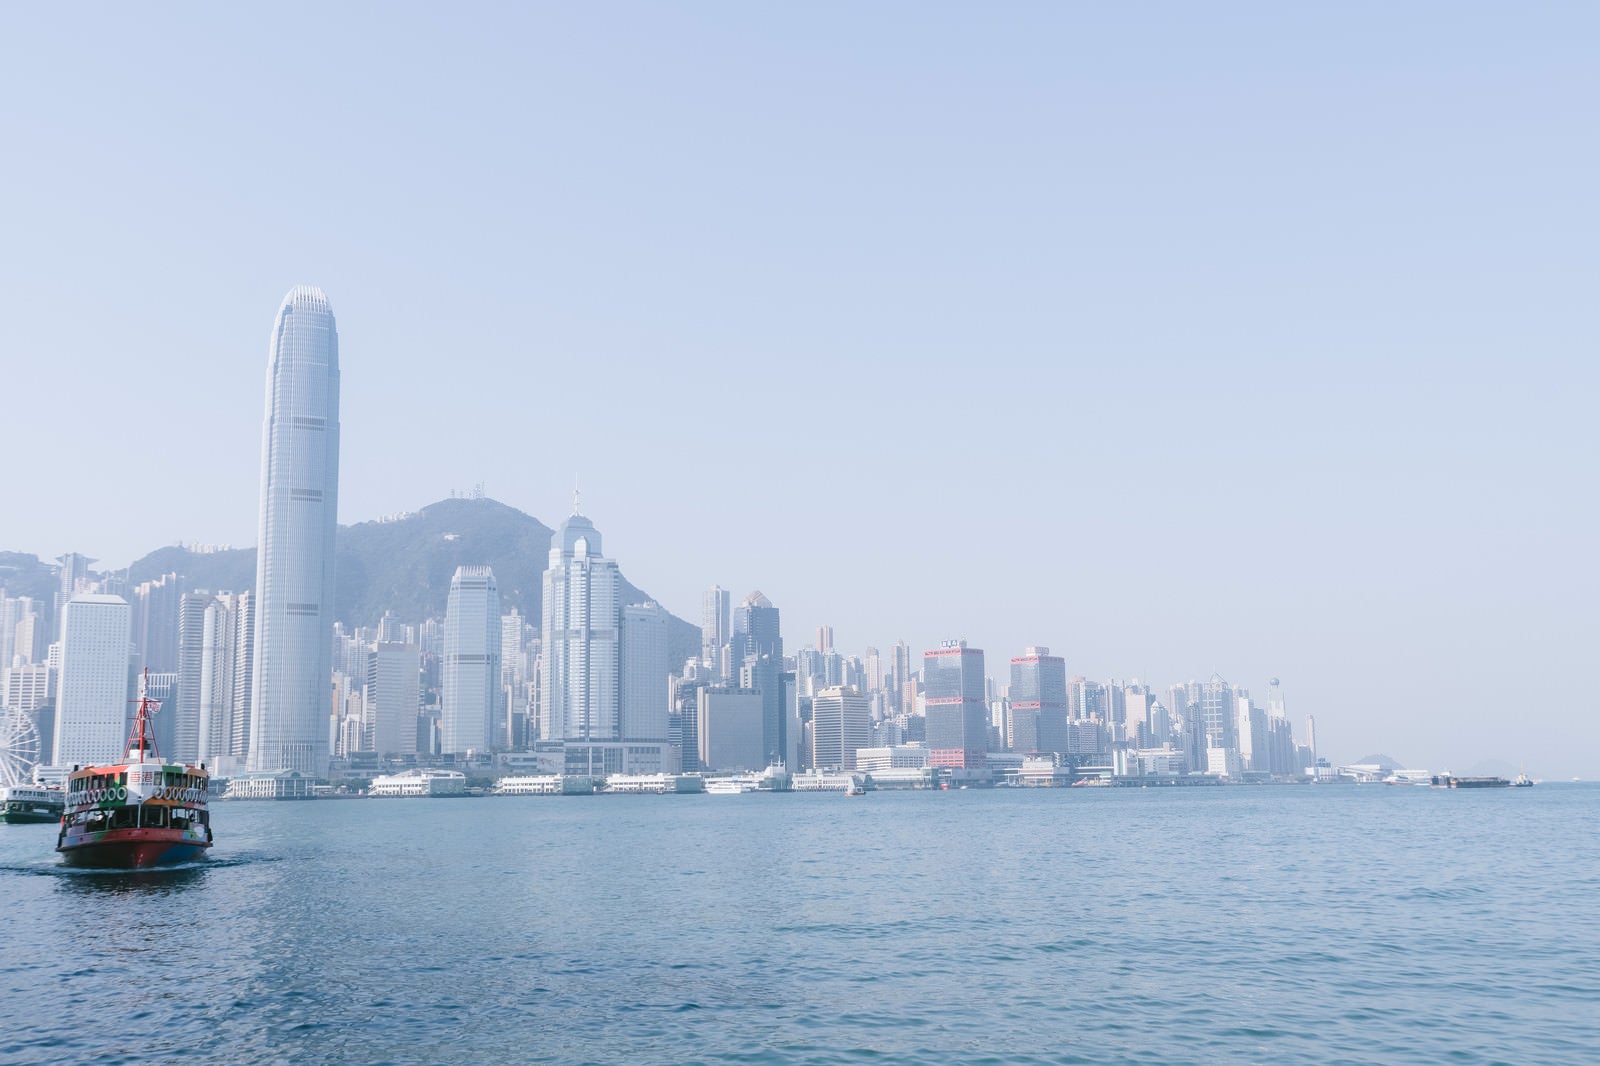 「香港の港と都市部のビル群」の写真